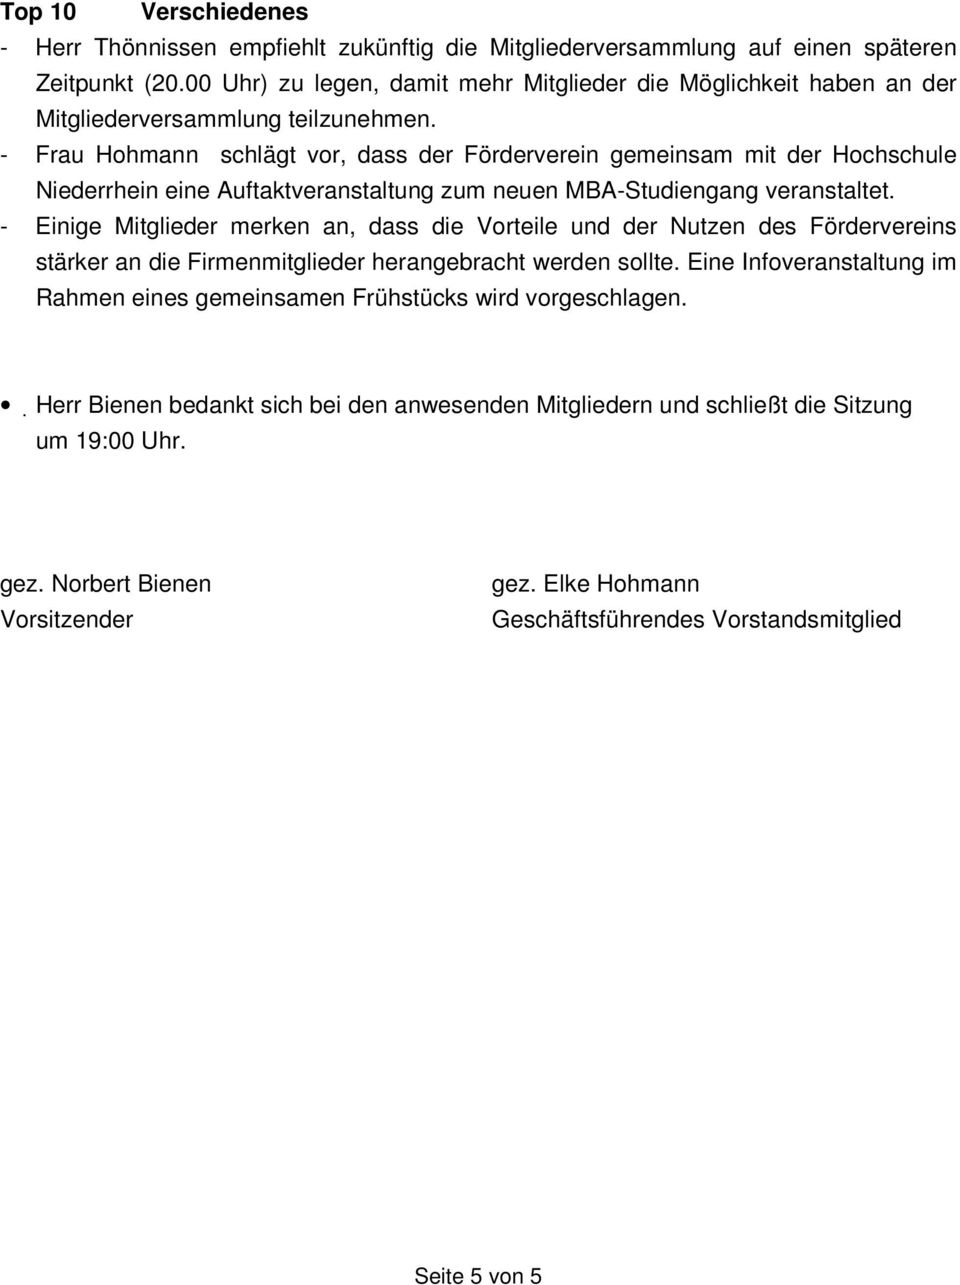 - Frau Hohmann schlägt vor, dass der Förderverein gemeinsam mit der Hochschule Niederrhein eine Auftaktveranstaltung zum neuen MBA-Studiengang veranstaltet.